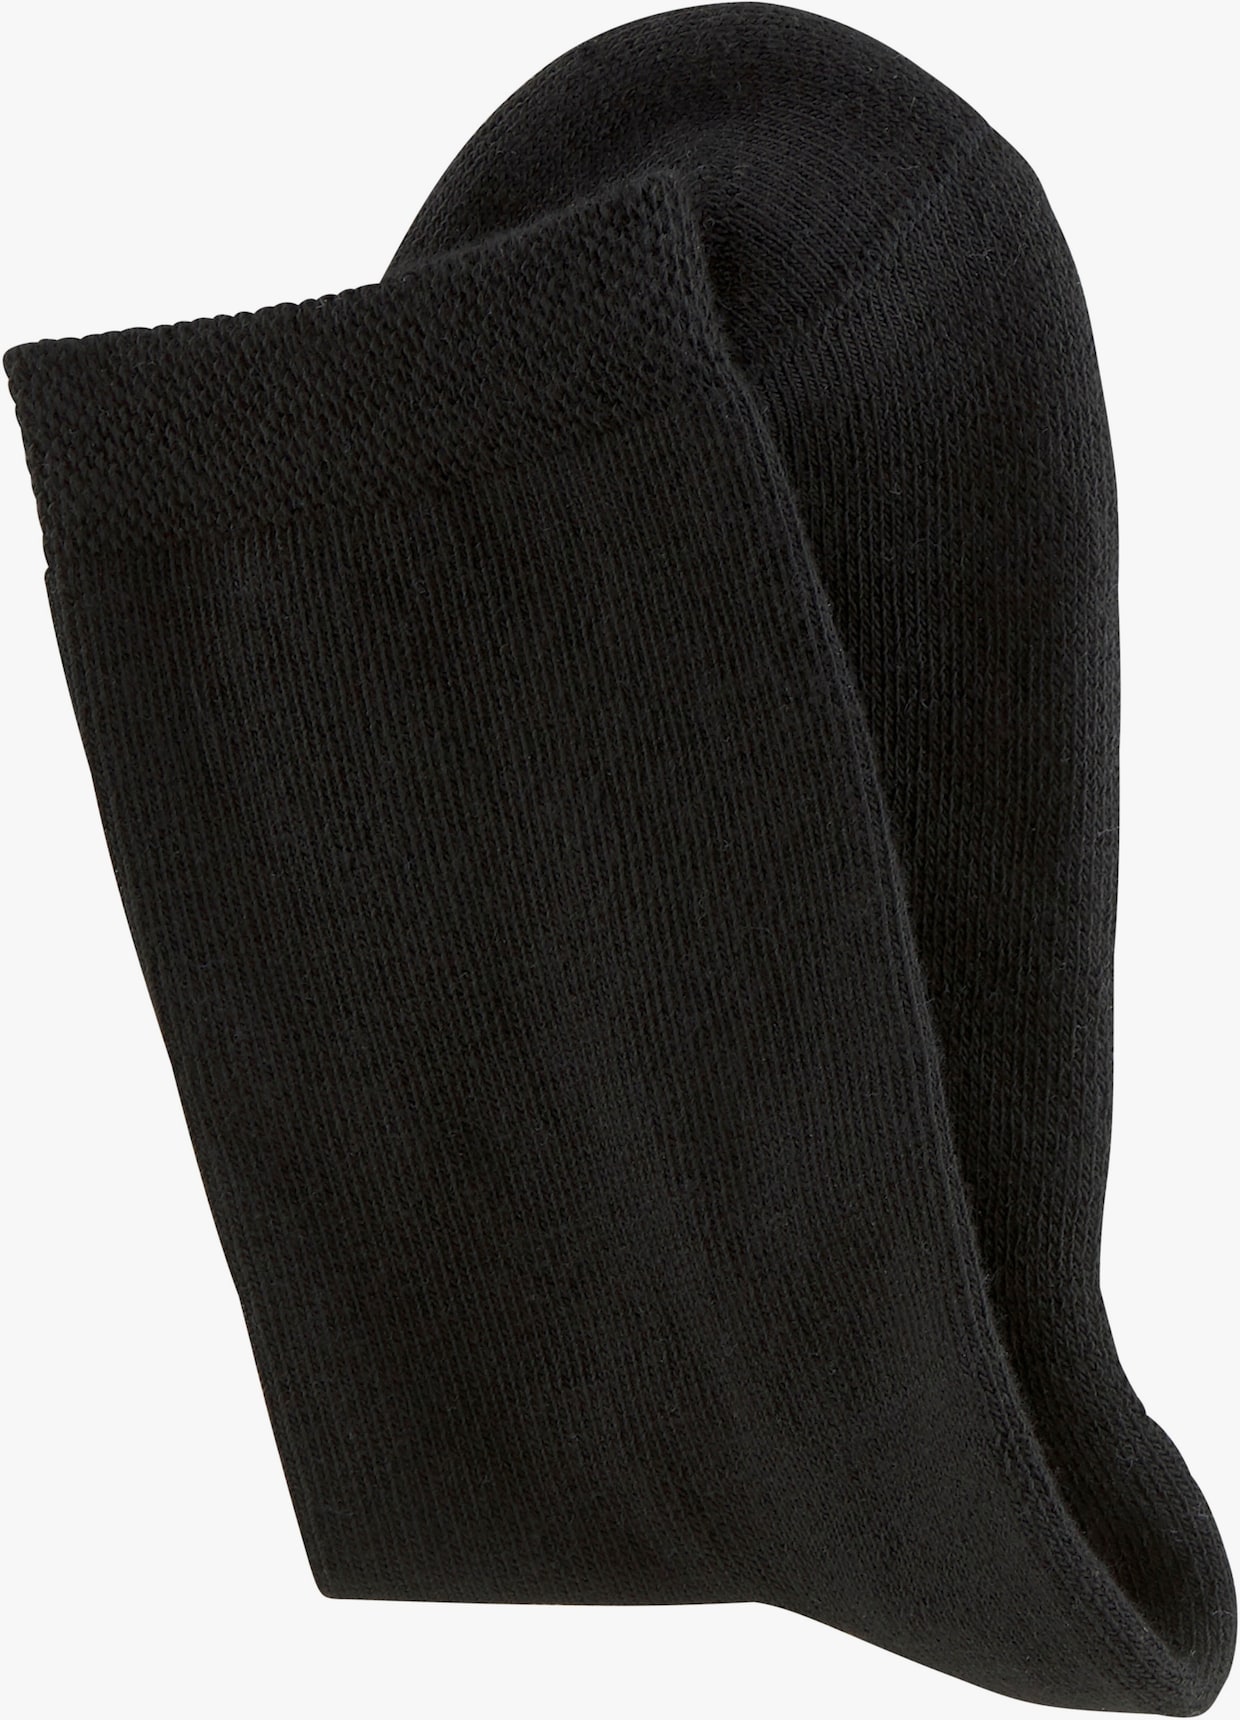 H.I.S Socken - 6x schwarz